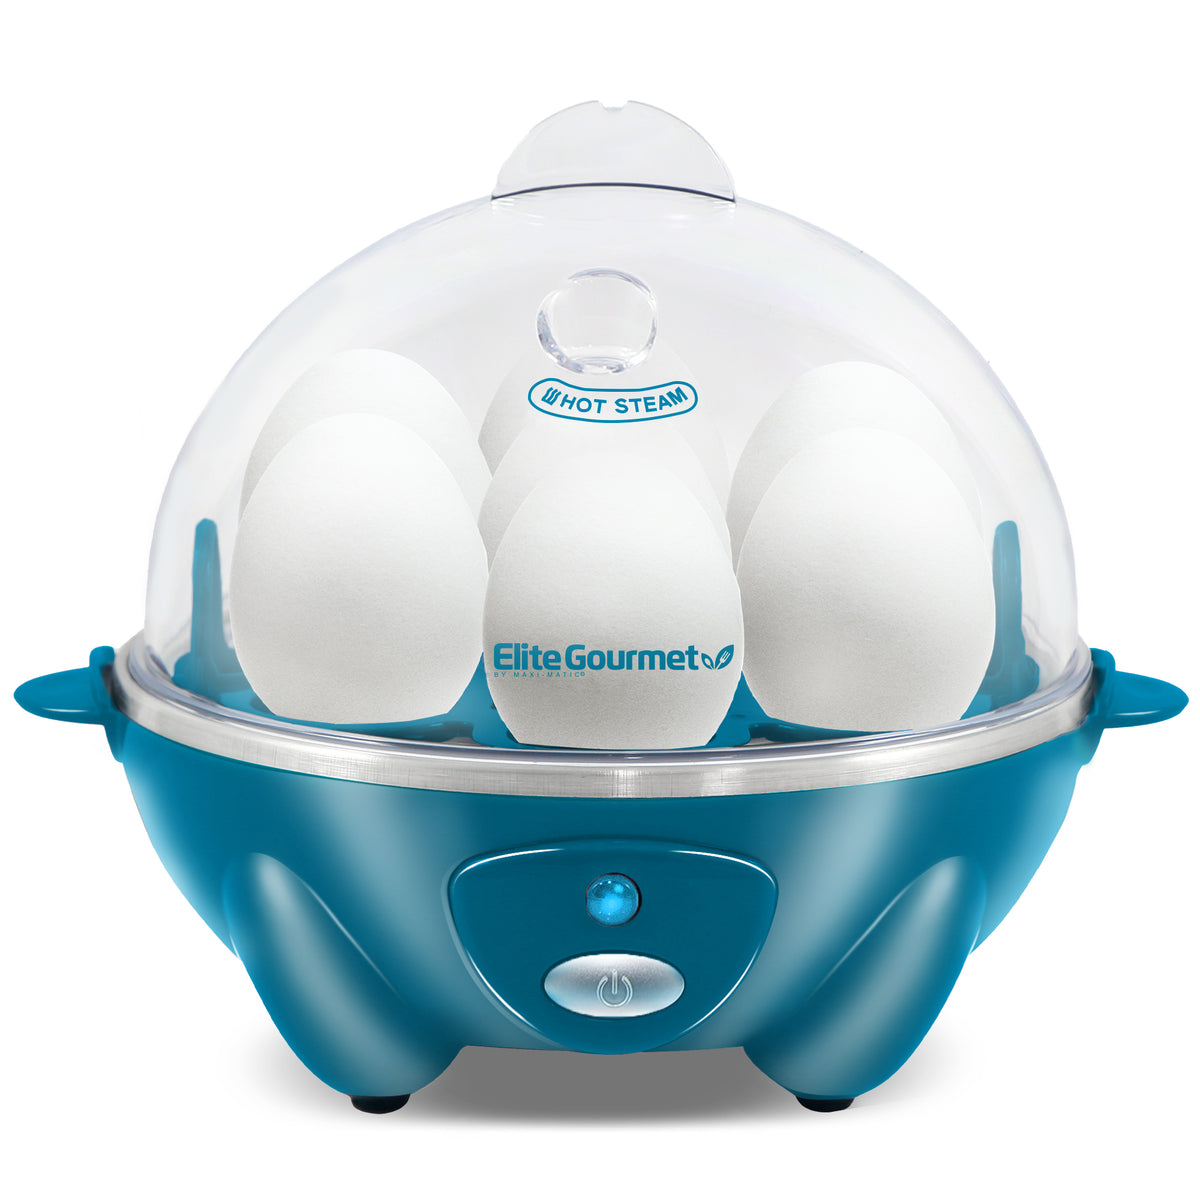 Buy Electric Egg Cooker 7-Capacity Hard-Boiled Egg Maker by Global Phoenix  on Dot & Bo